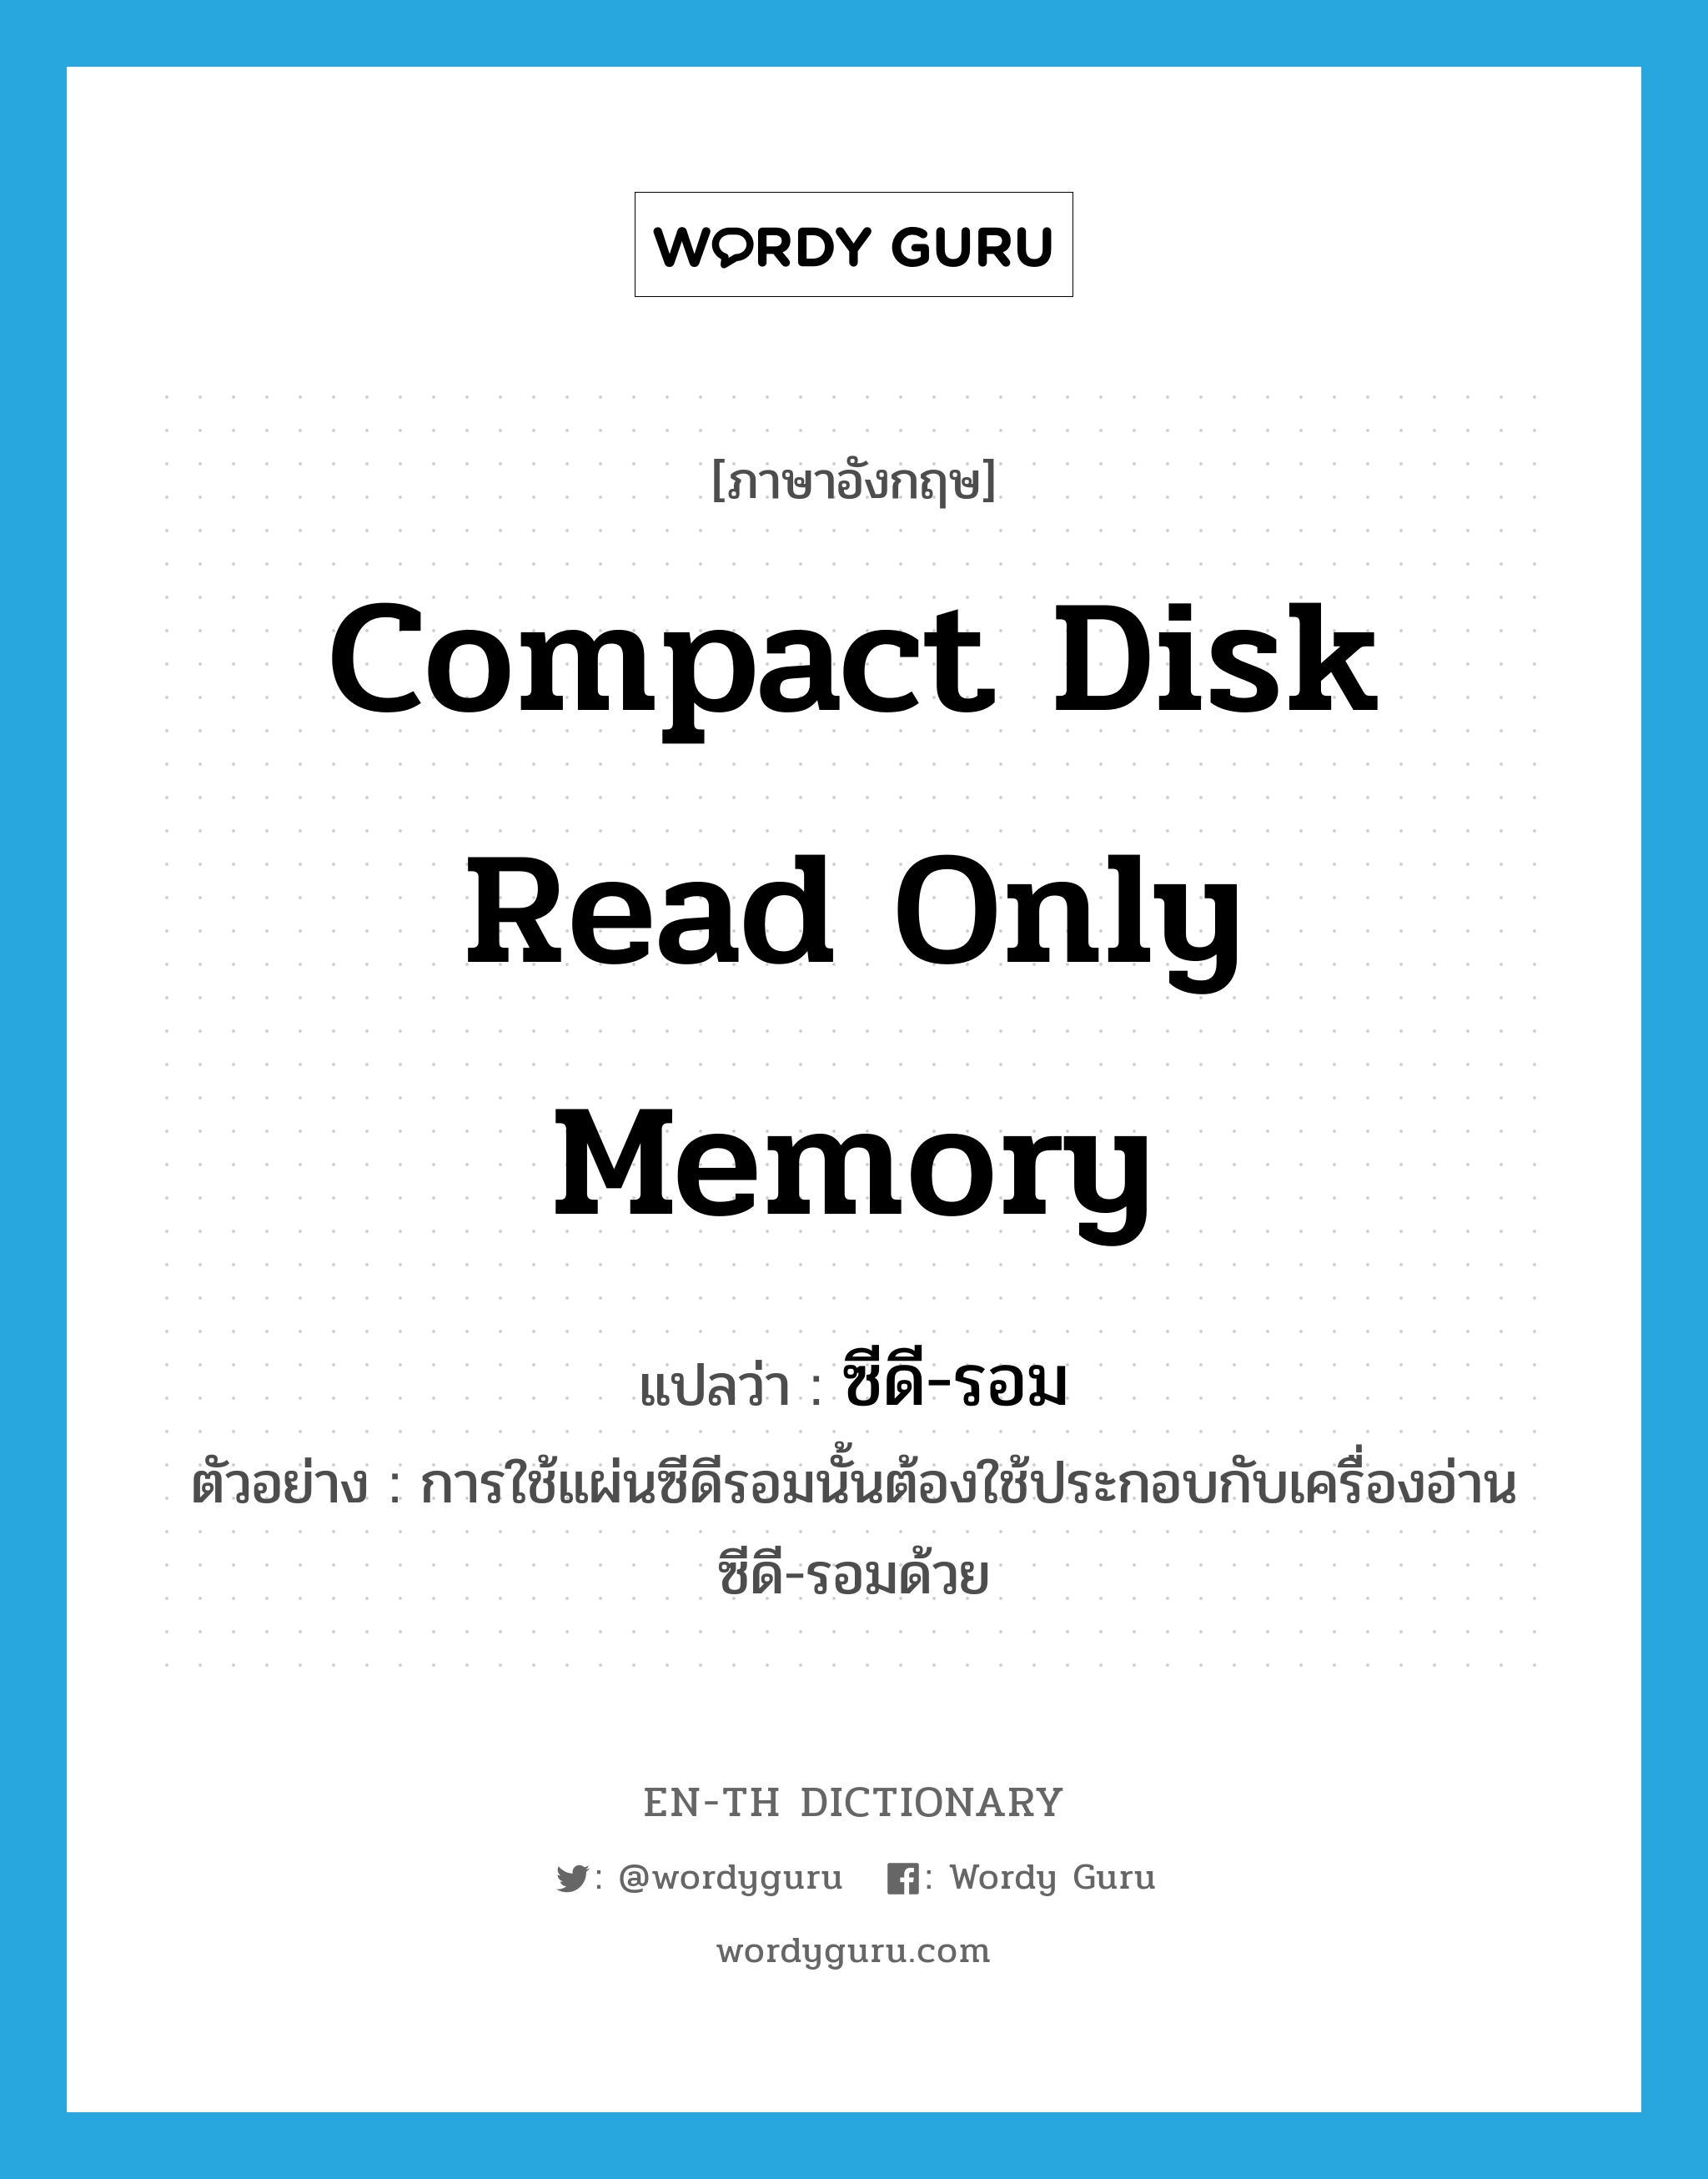 compact disk read only memory แปลว่า?, คำศัพท์ภาษาอังกฤษ compact disk read only memory แปลว่า ซีดี-รอม ประเภท N ตัวอย่าง การใช้แผ่นซีดีรอมนั้นต้องใช้ประกอบกับเครื่องอ่านซีดี-รอมด้วย หมวด N